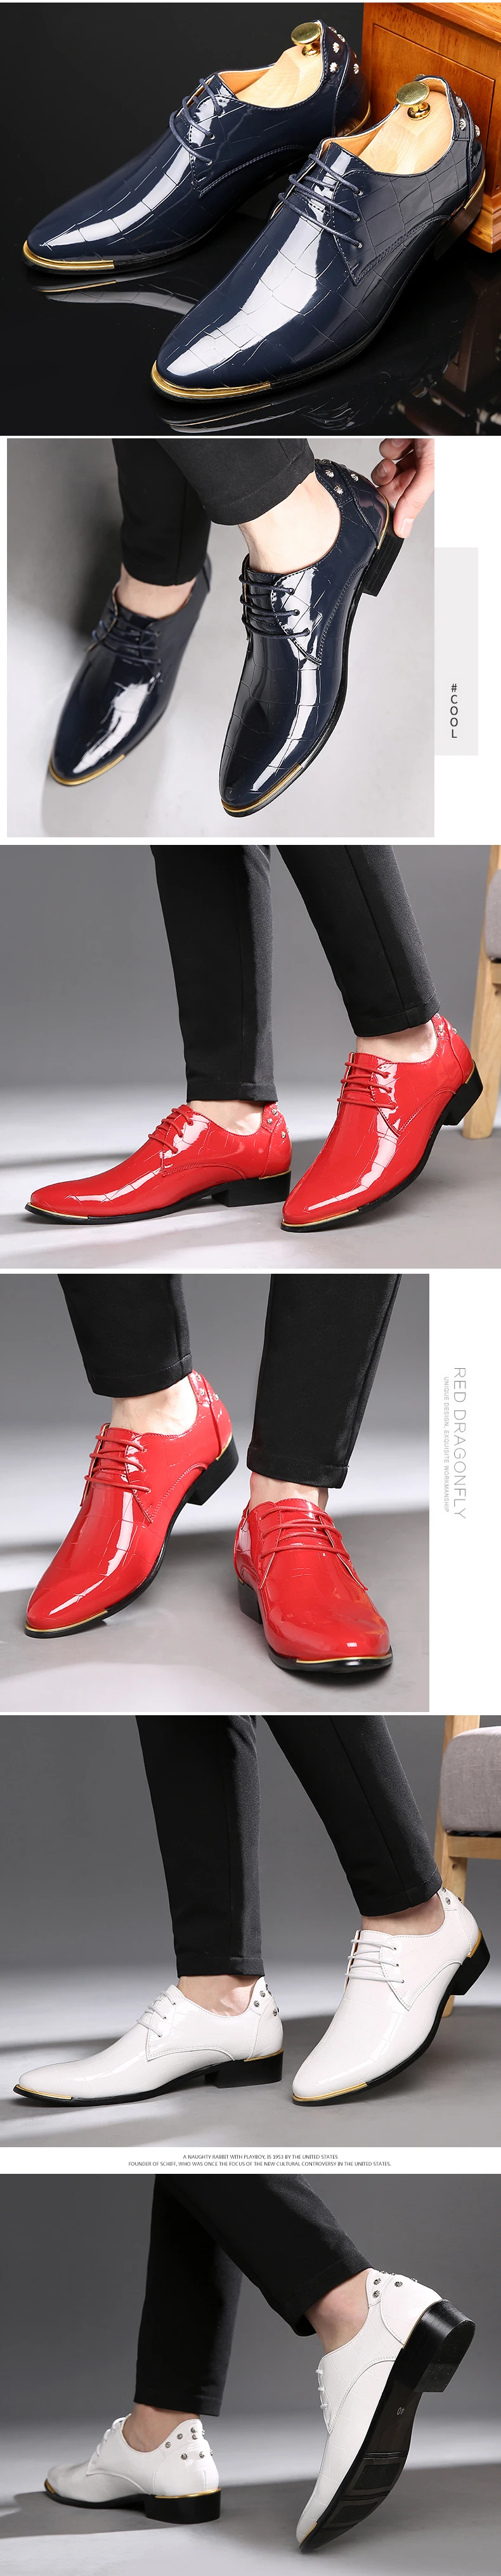 Misalwa/дропшиппинг, 38-48, мужские туфли-оксфорды из искусственной кожи, со стразами, красные, белые, Элегантные Мужские модельные туфли с острым носком вечерние туфли на плоской подошве